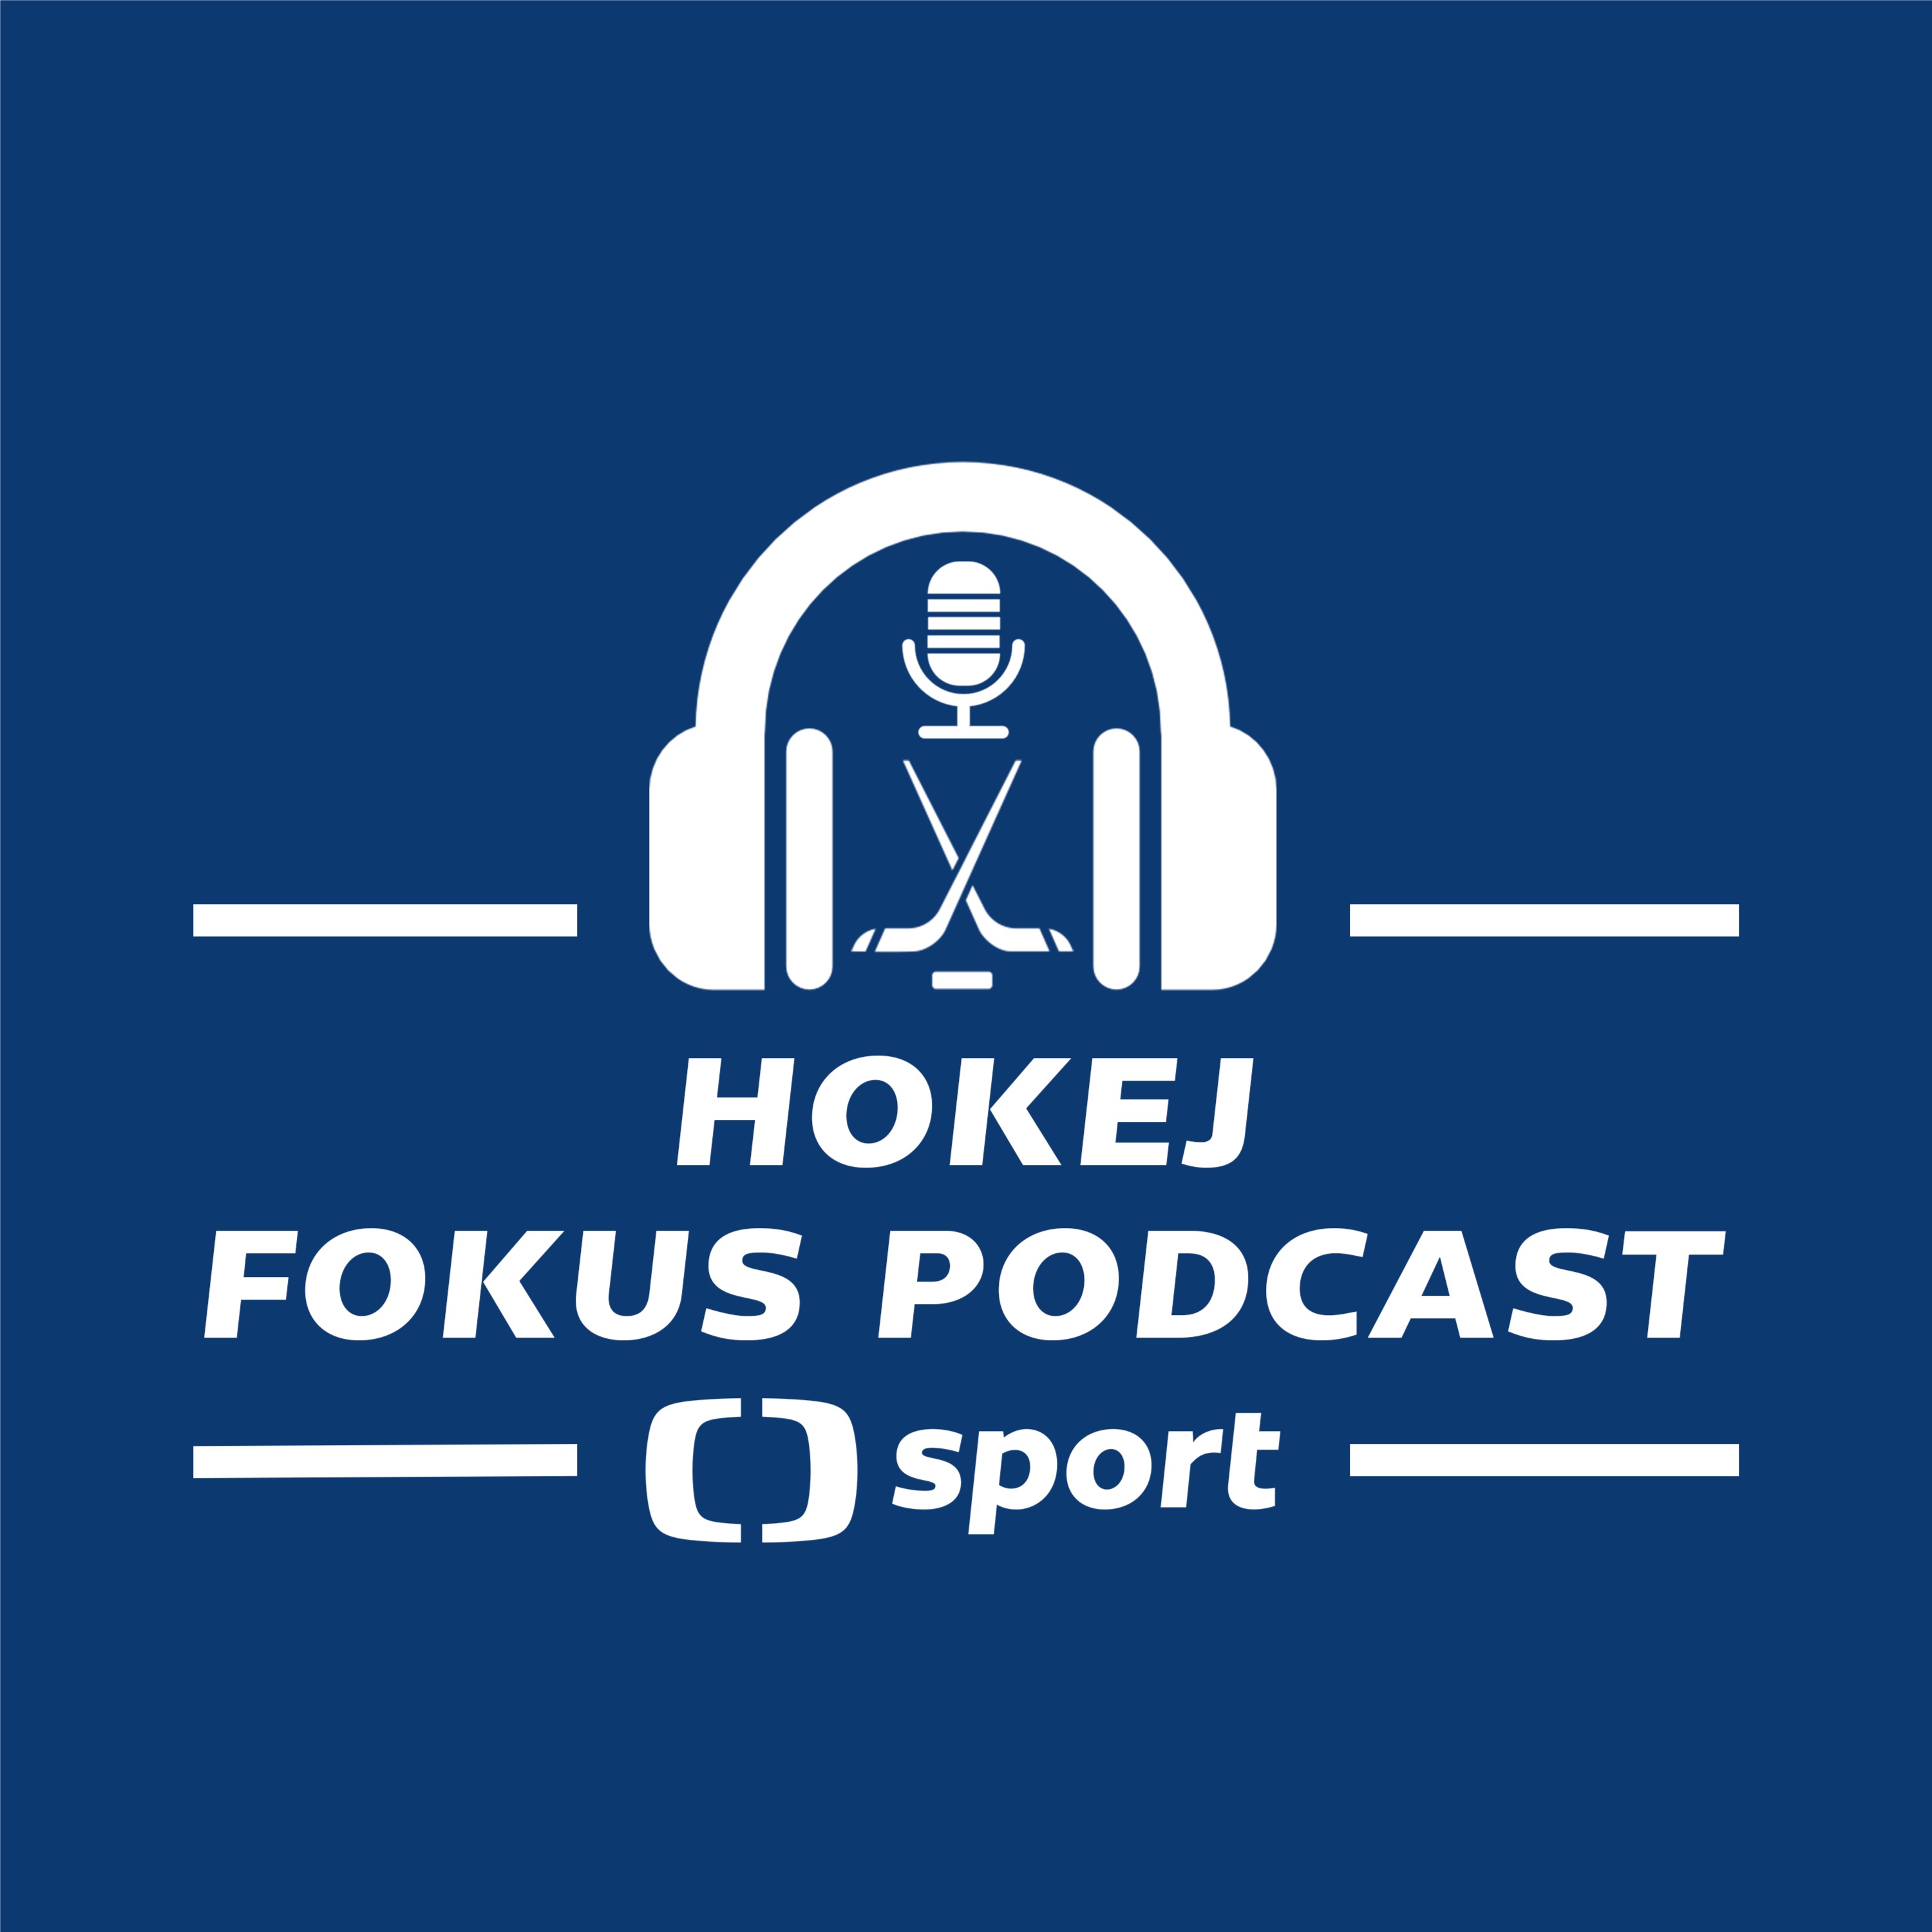 Hokej fokus podcast: Predikce sérií 1. kola play-off NHL a události závěru základní části